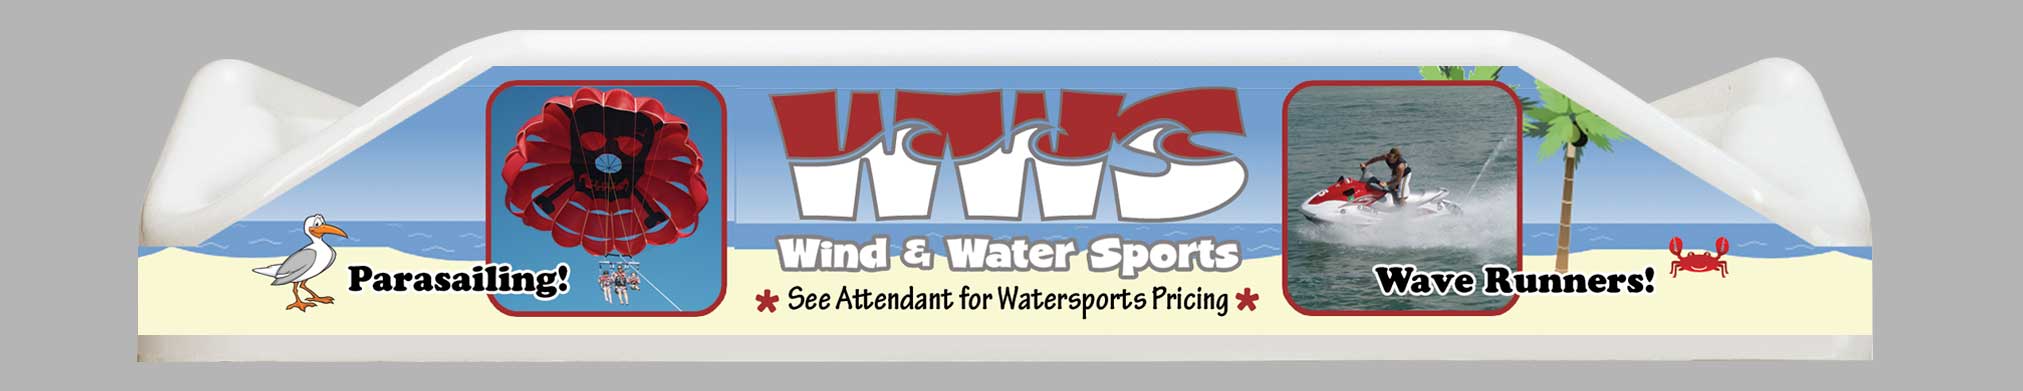 Wind & Water Sports